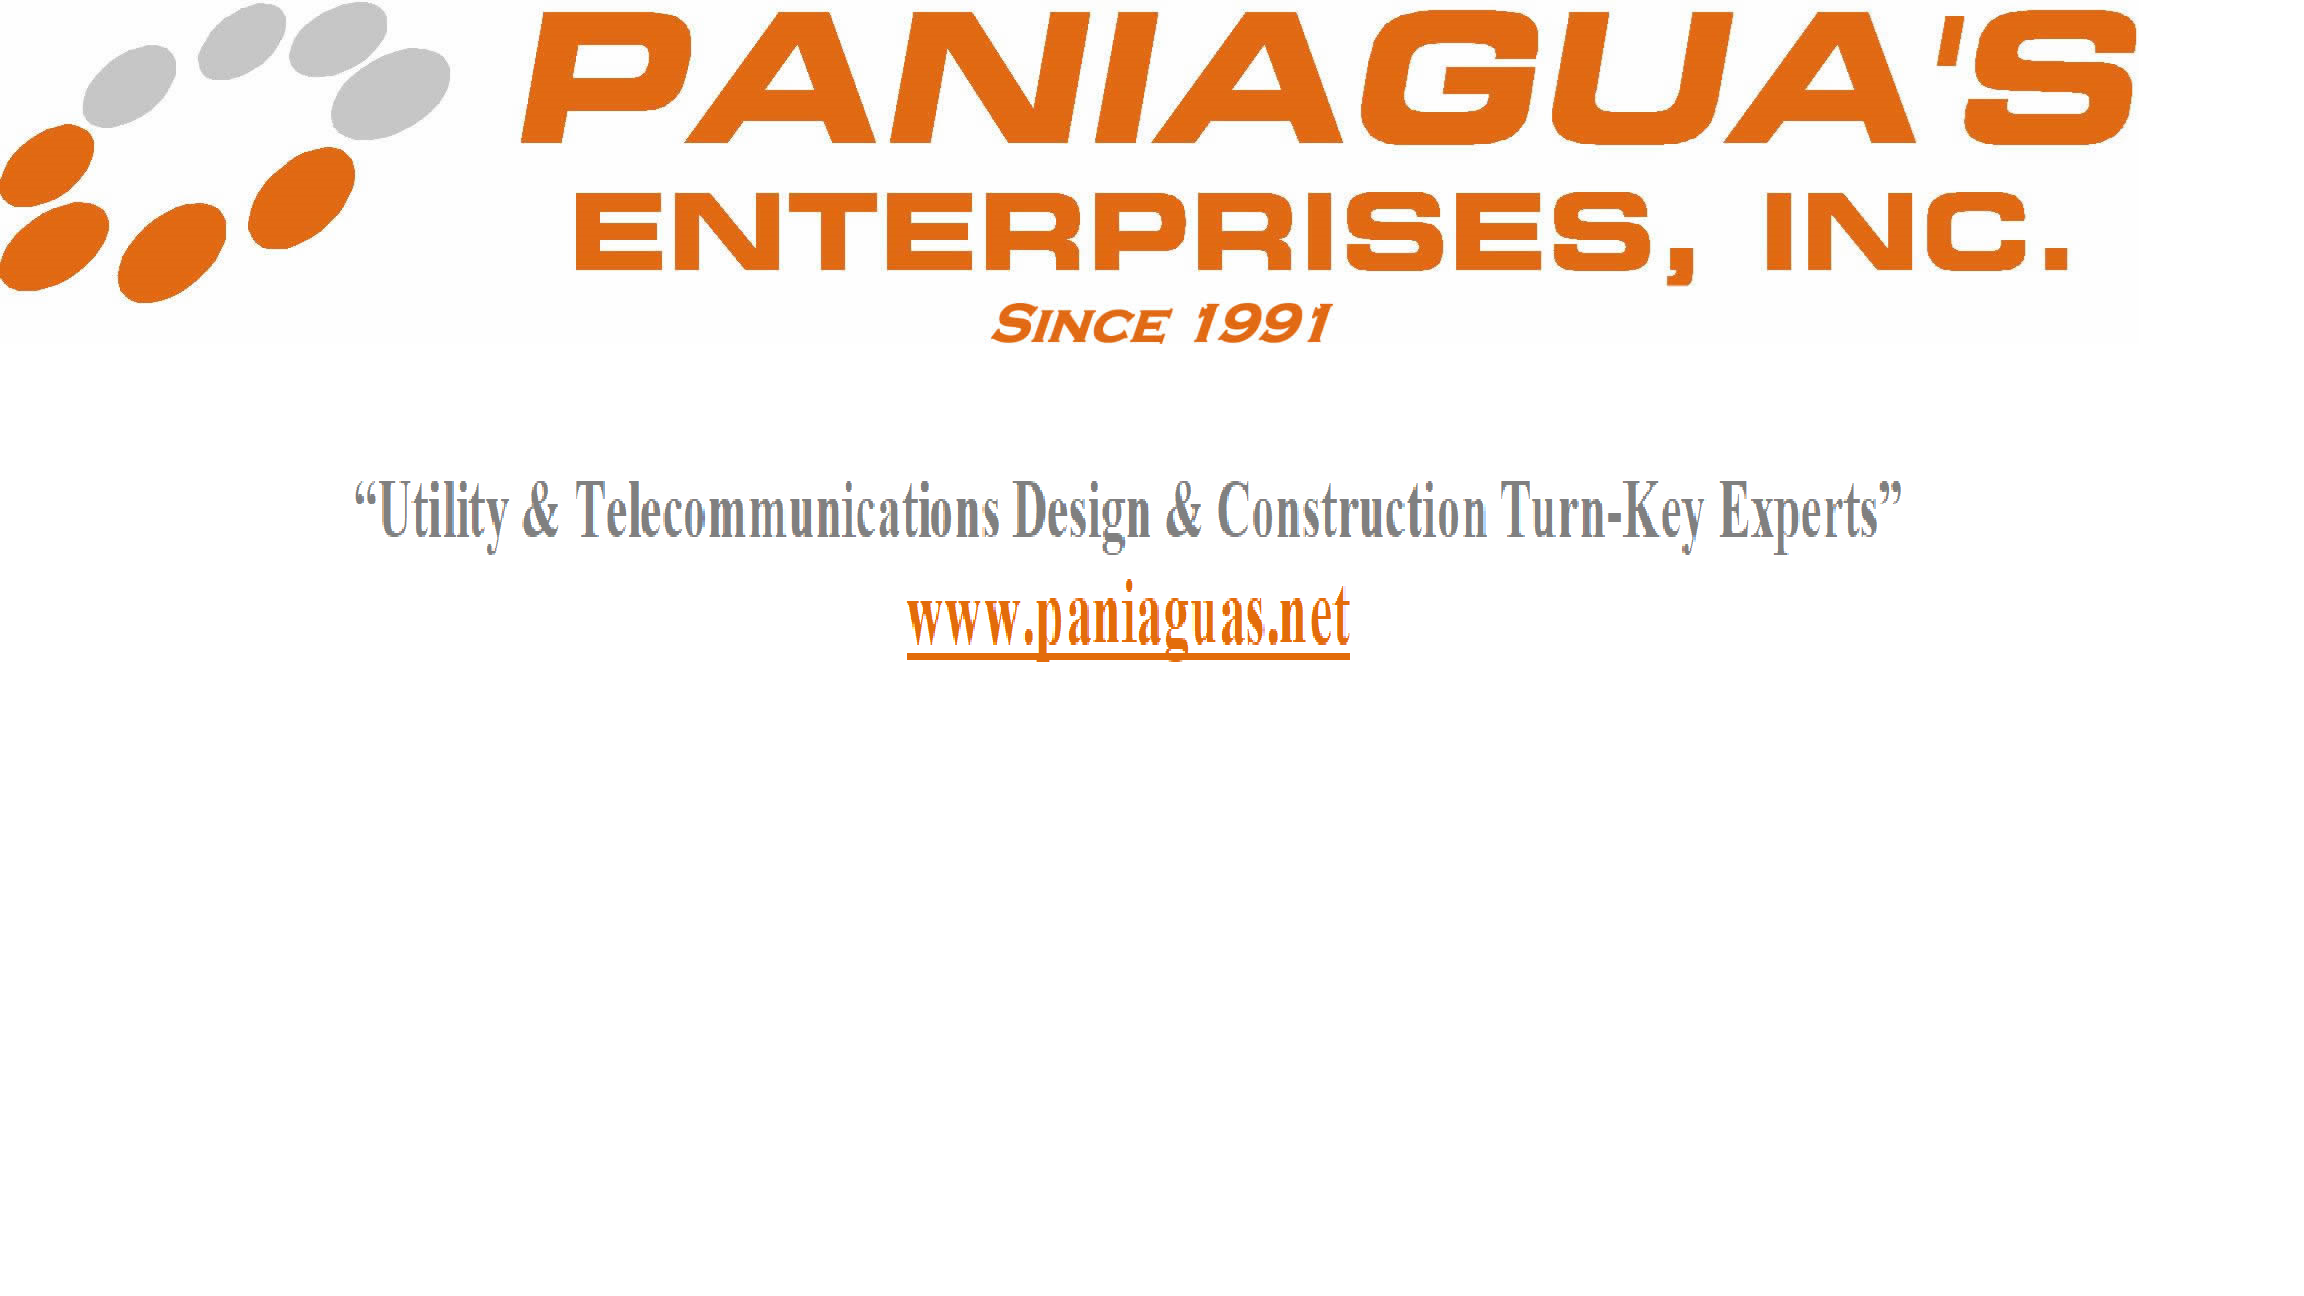 Paniagua's Enterprises DOT Vehicle Inspection Audit